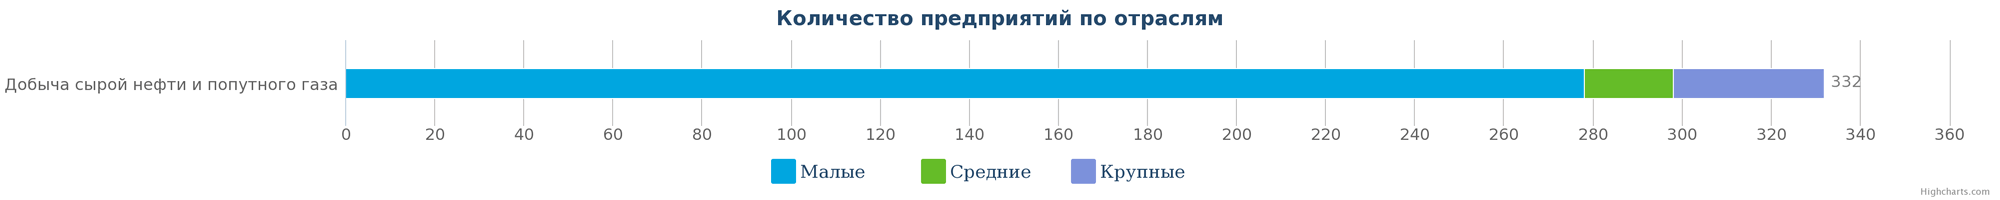 2   Кількість компаній, що займаються видобутком сирої нафти і попутного газу в Казахстані за розмірами підприємства на 09